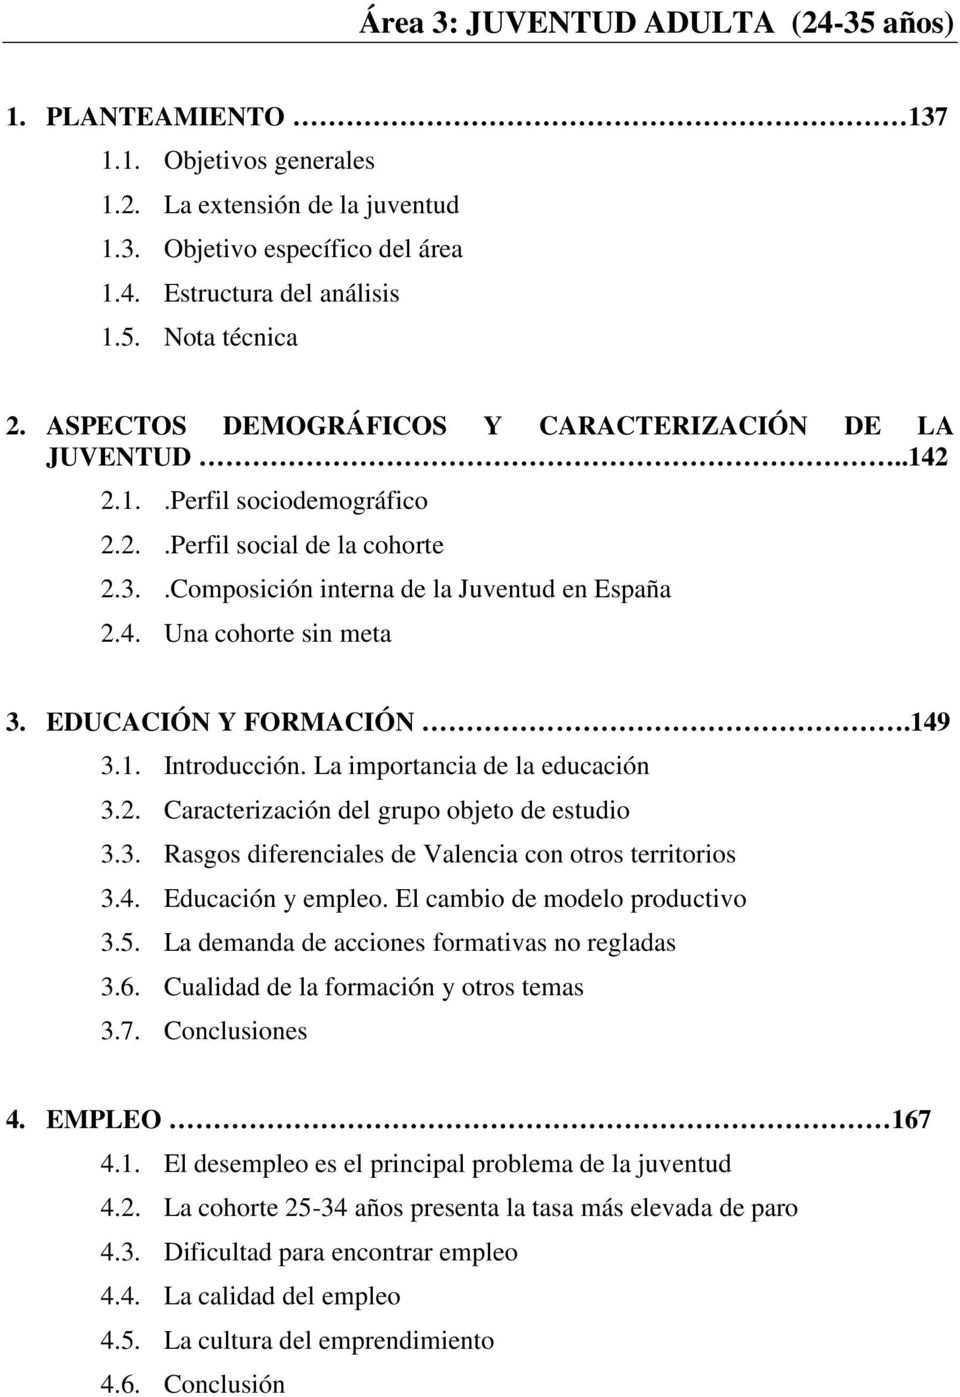 EDUCACIÓN Y FORMACIÓN.149 3.1. Introducción. La importancia de la educación 3.2. Caracterización del grupo objeto de estudio 3.3. Rasgos diferenciales de Valencia con otros territorios 3.4. Educación y empleo.